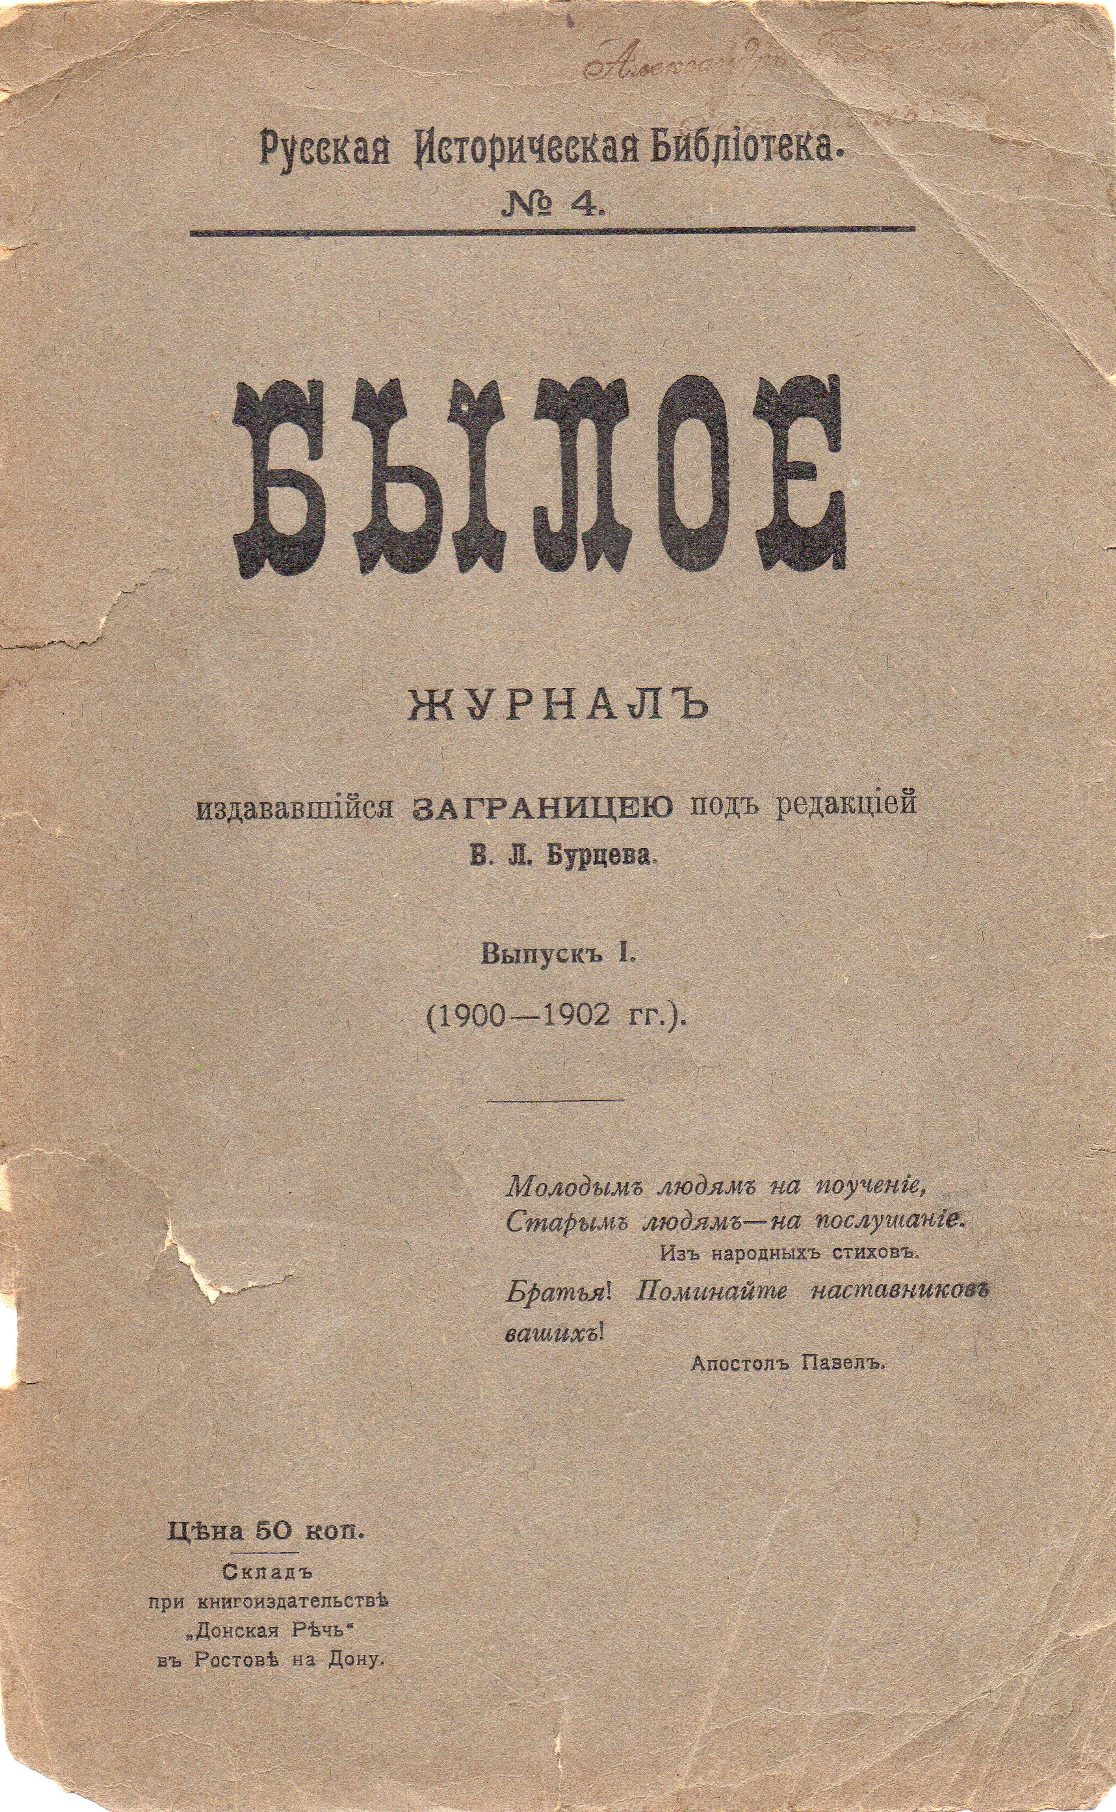 Журнал "Былое". 1906. Вип. І. (1901-1902 рр.)